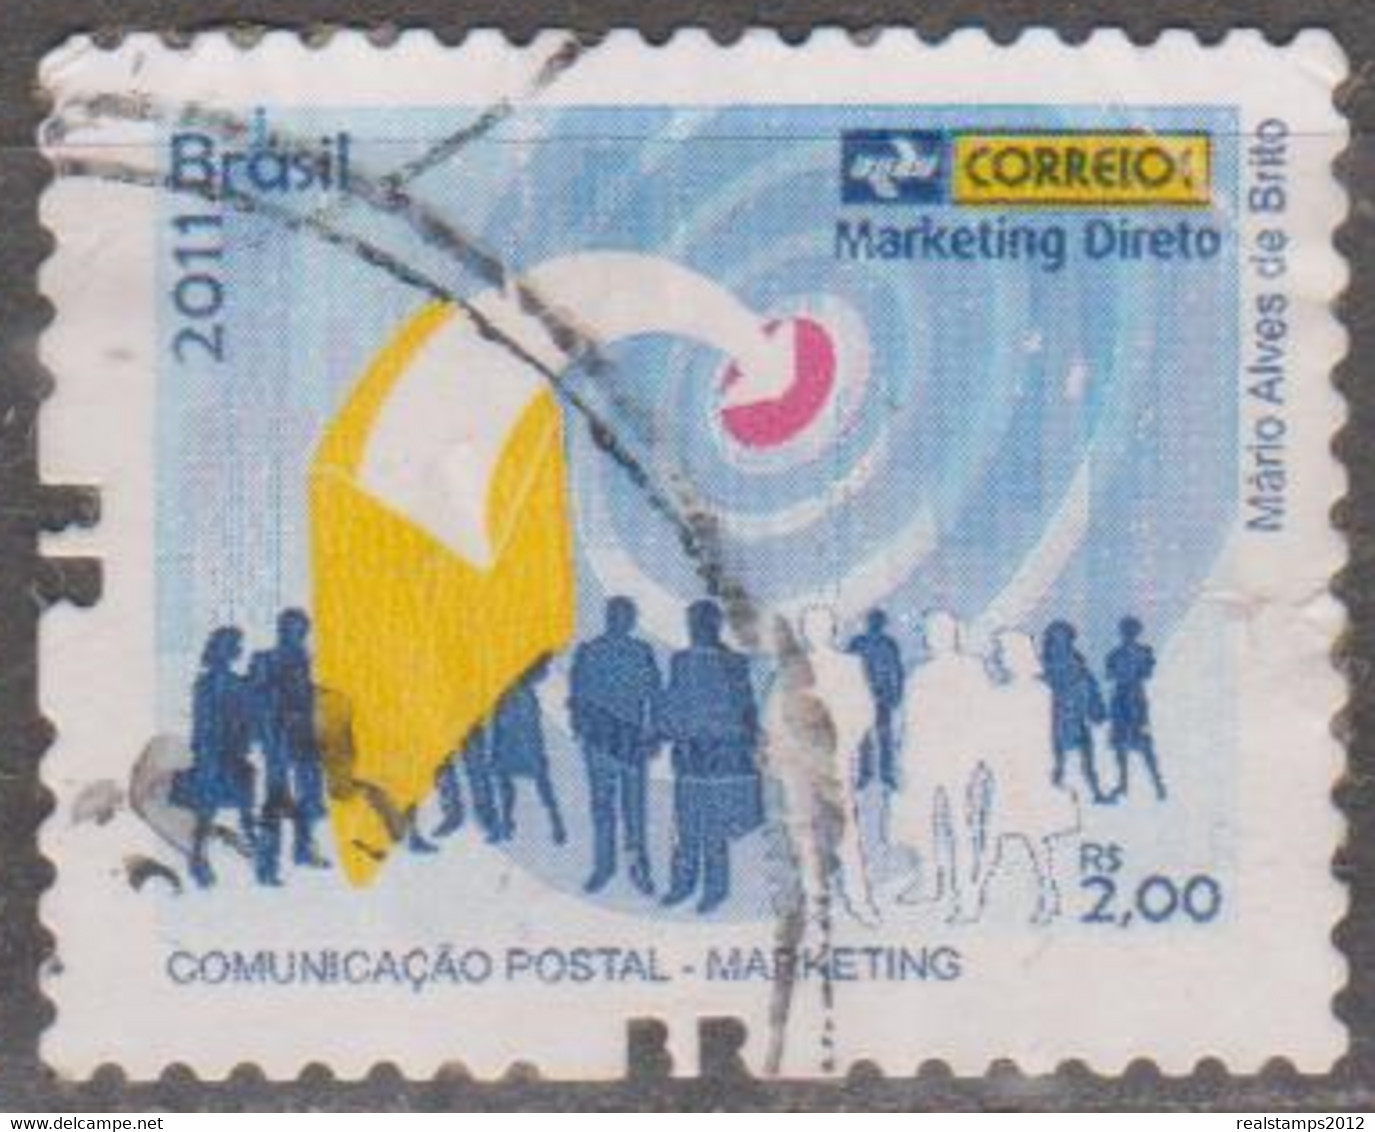 Brasil - 2011 - Comunicação Postal - Marketing   - Marketing Direto  R$ 2,00 (o)  RHM Nº - Gebraucht